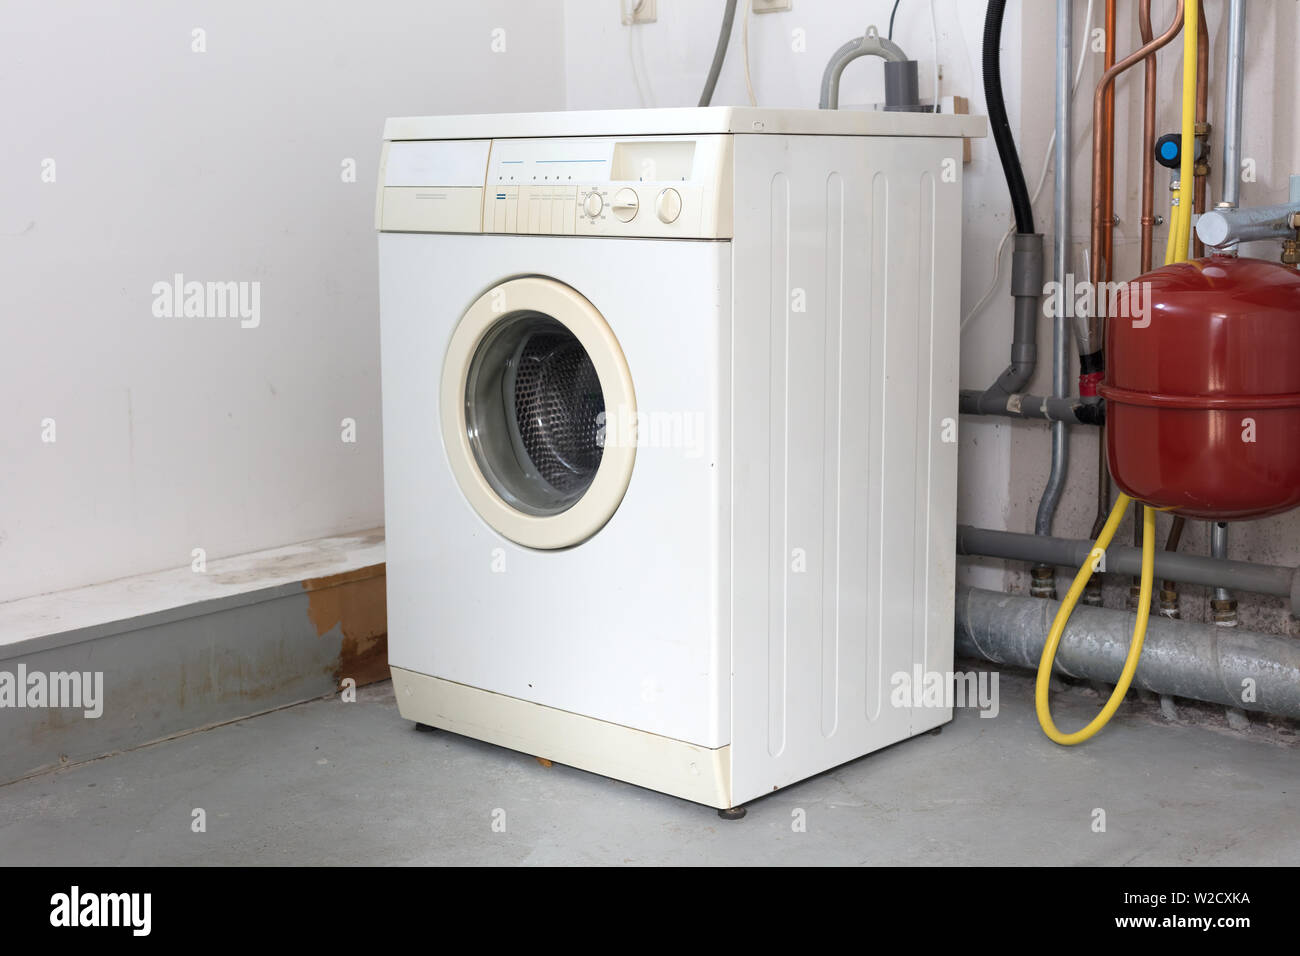 Alt, dreckig Waschmaschine auf dem Dachboden, Tür geschlossen  Stockfotografie - Alamy